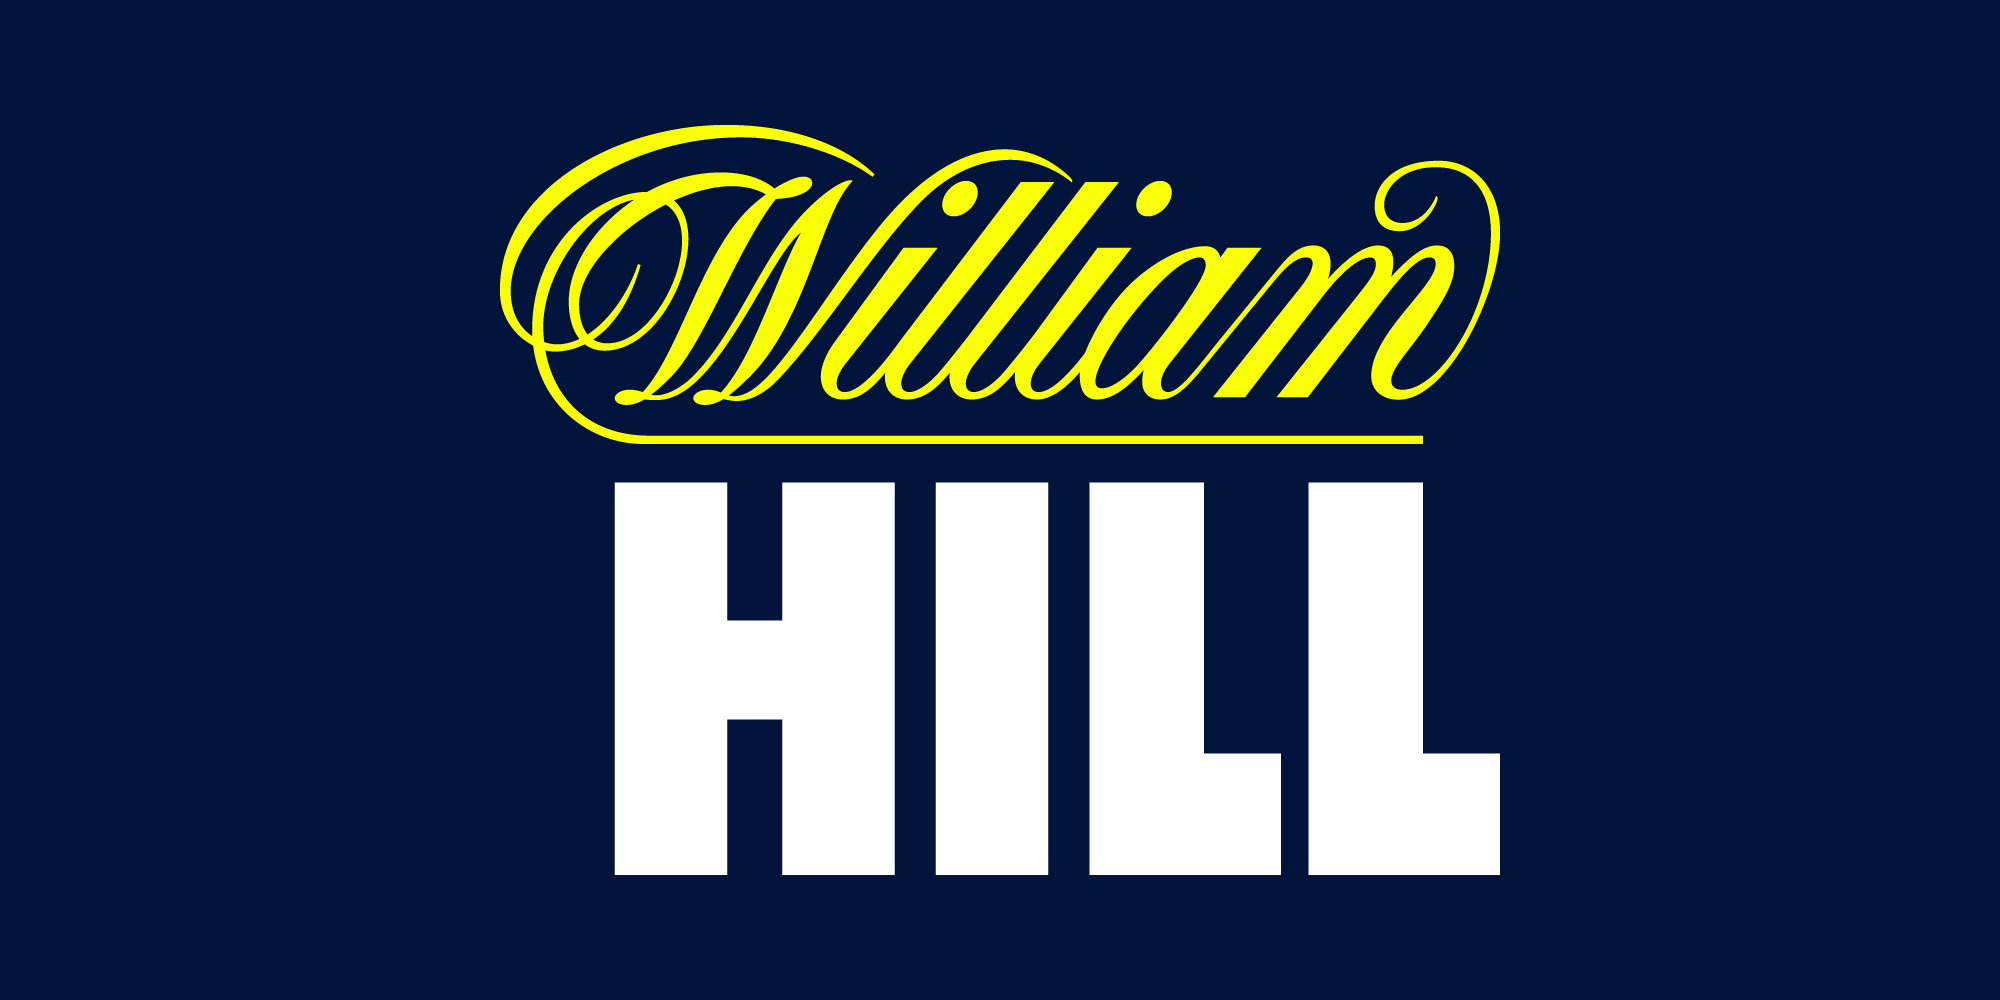 <a href="https://betinjp.com/goto-1xbet">williamhill.com</a>